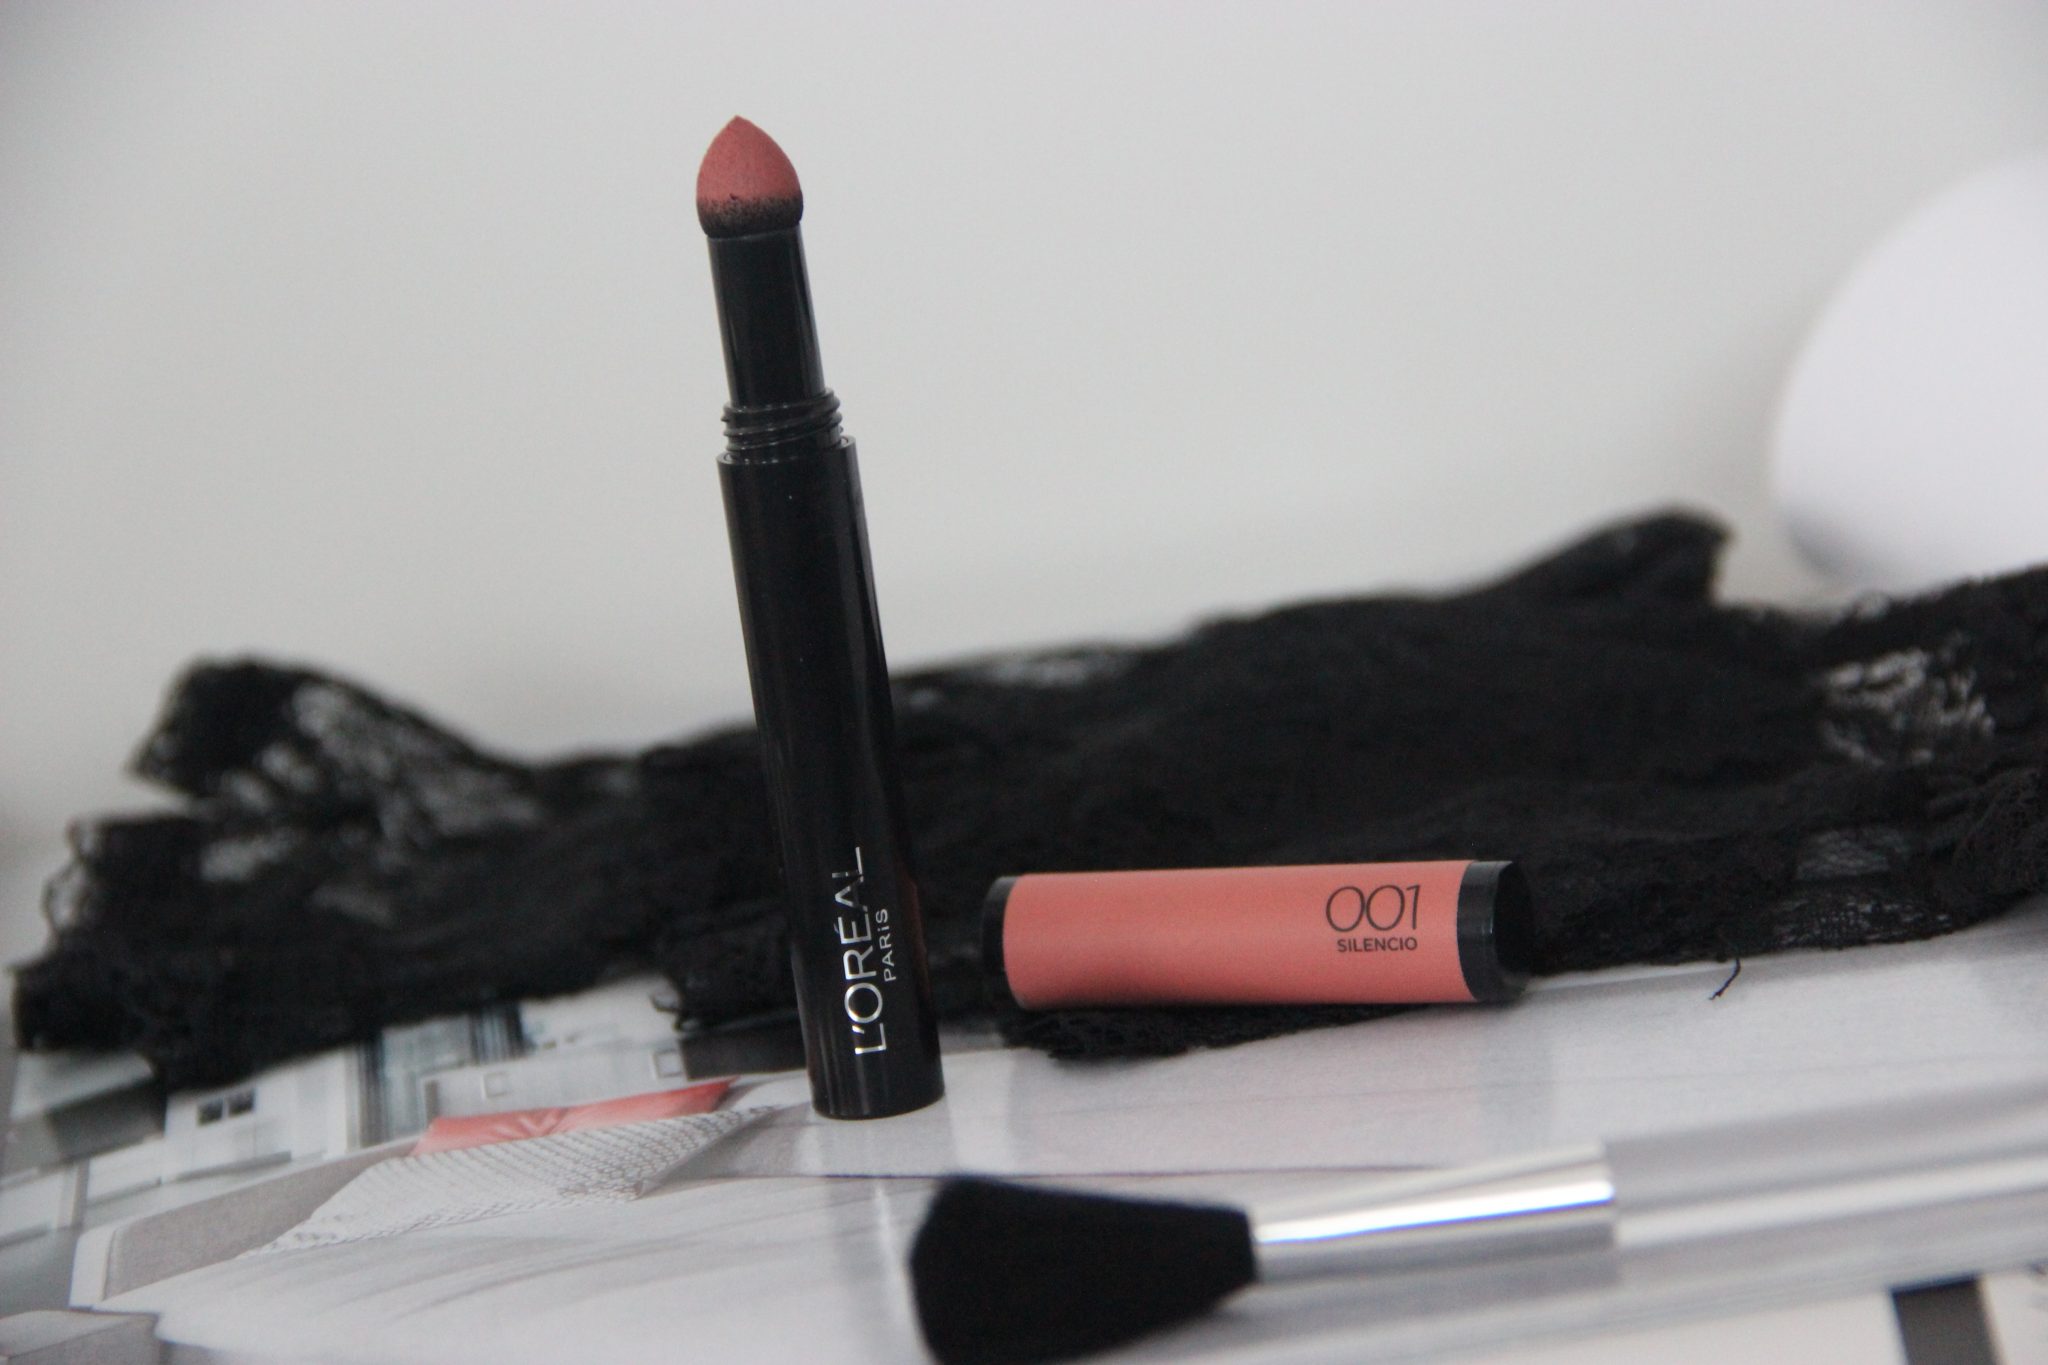 L'Oréal Paris Infallible Pro-Matte 001 Silencio Lipstick